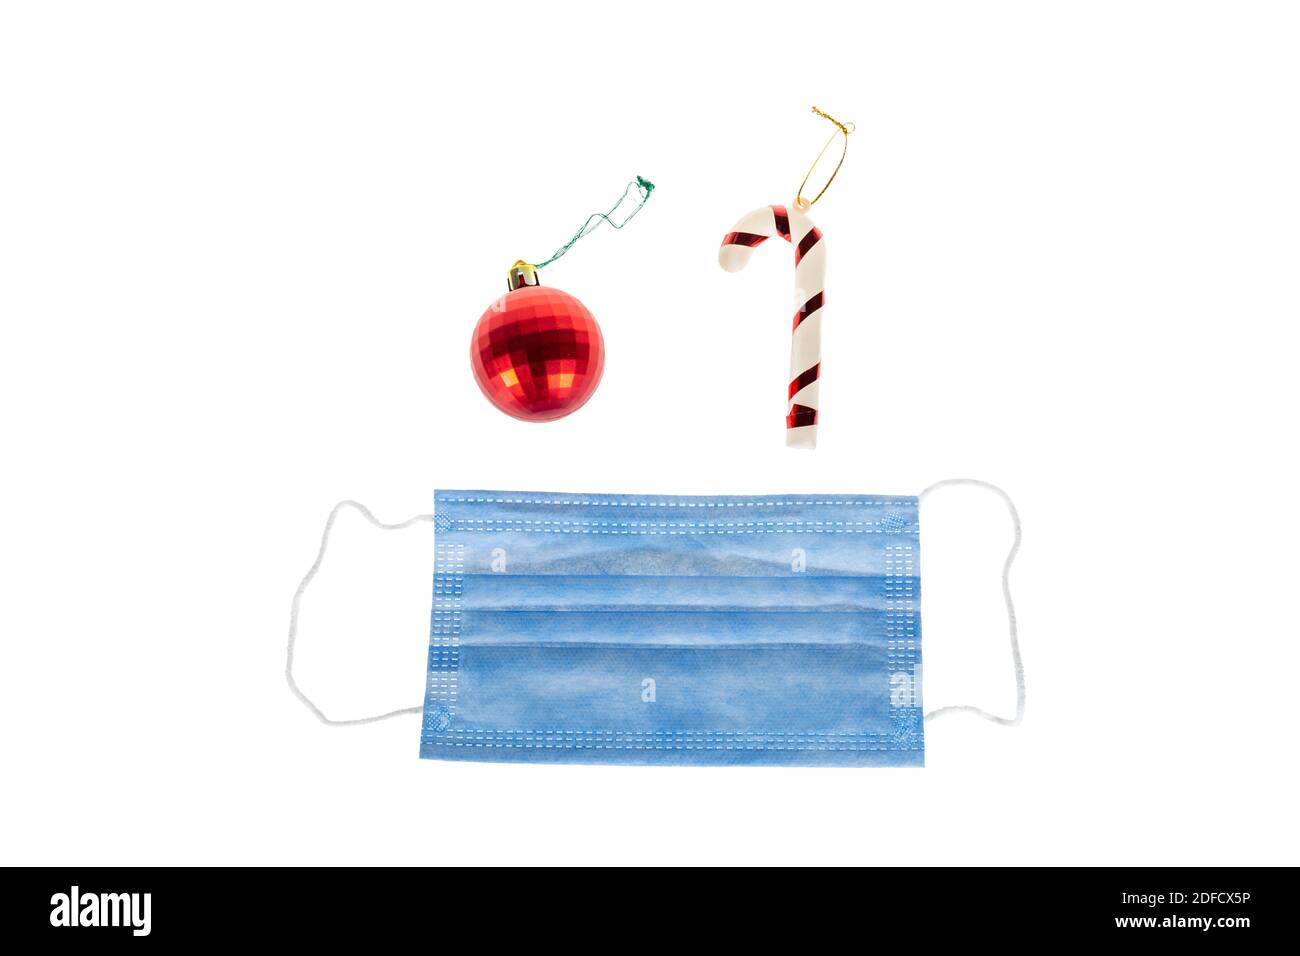 Décoration de Noël sur fond blanc de canne à sucre, boule rouge de noël et masque médical de protection pour Covid-19. Isolé sur blanc. Banque D'Images